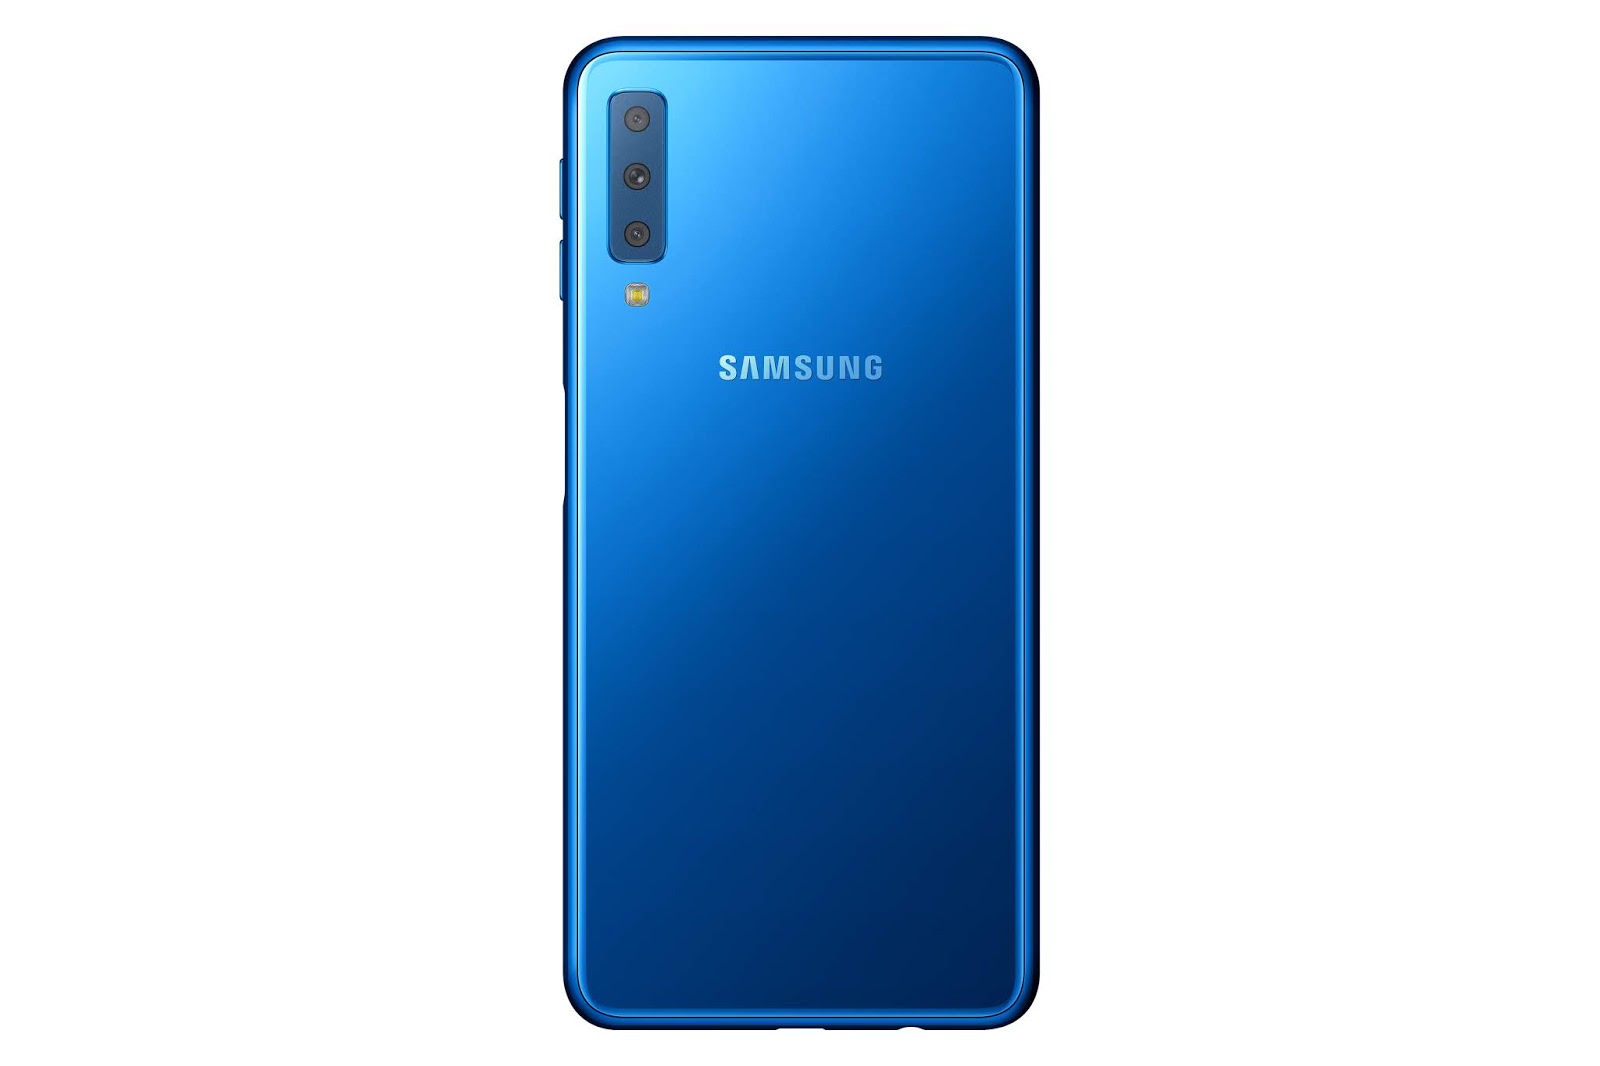 0d26c SM A750F 002 Back Blue - Samsung presenta Galaxy A9 e Galaxy A7